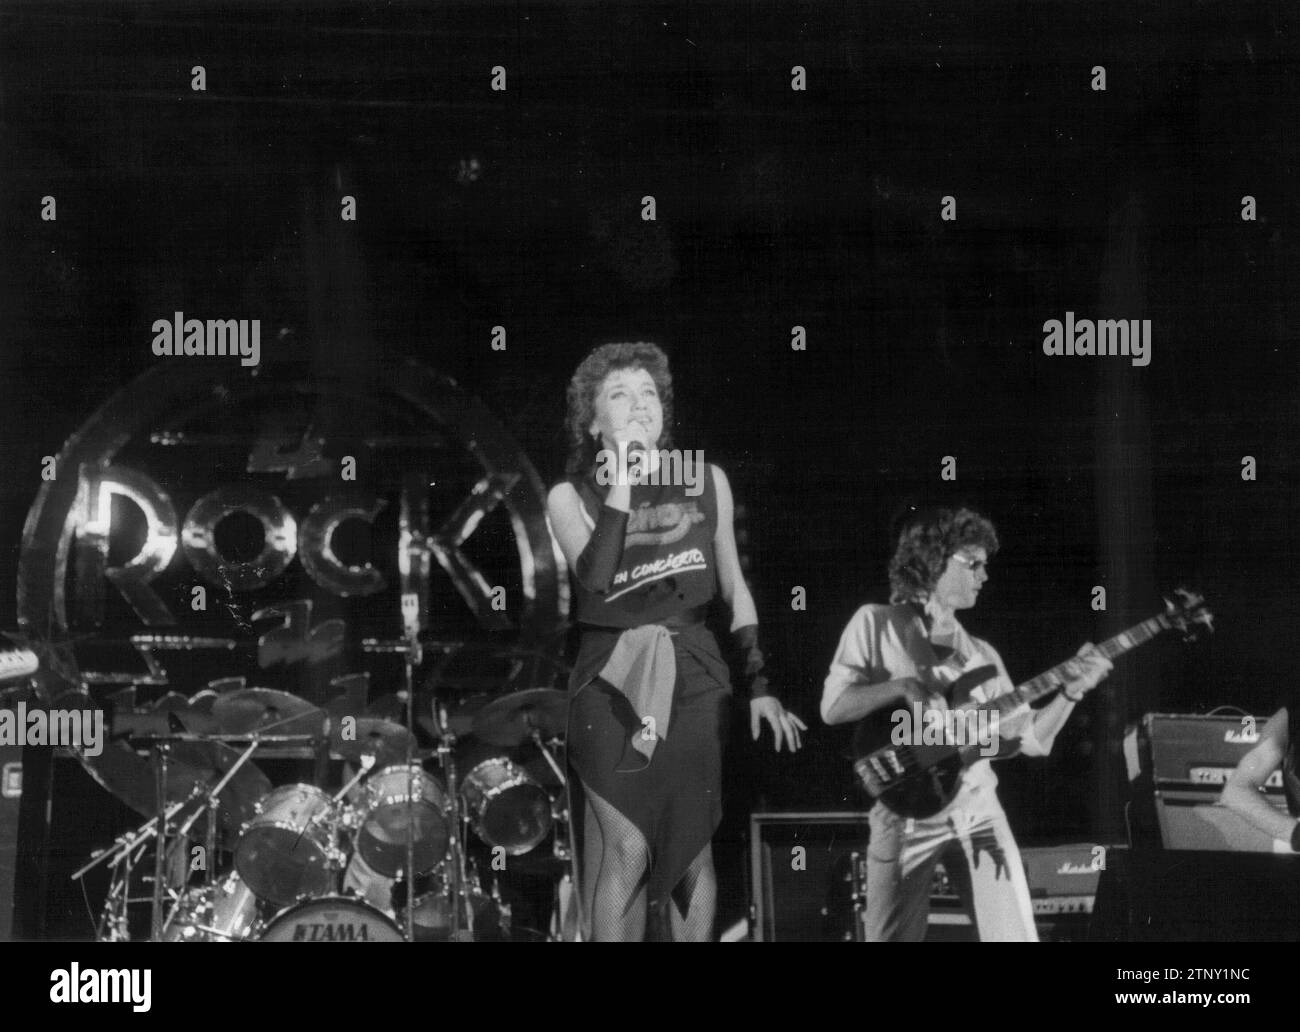 Madrid, 09/02/1983. Luz Casal on the Rock of a Summer Night tour by Miguel Ríos. Credit: Album / Archivo ABC / José García Stock Photo